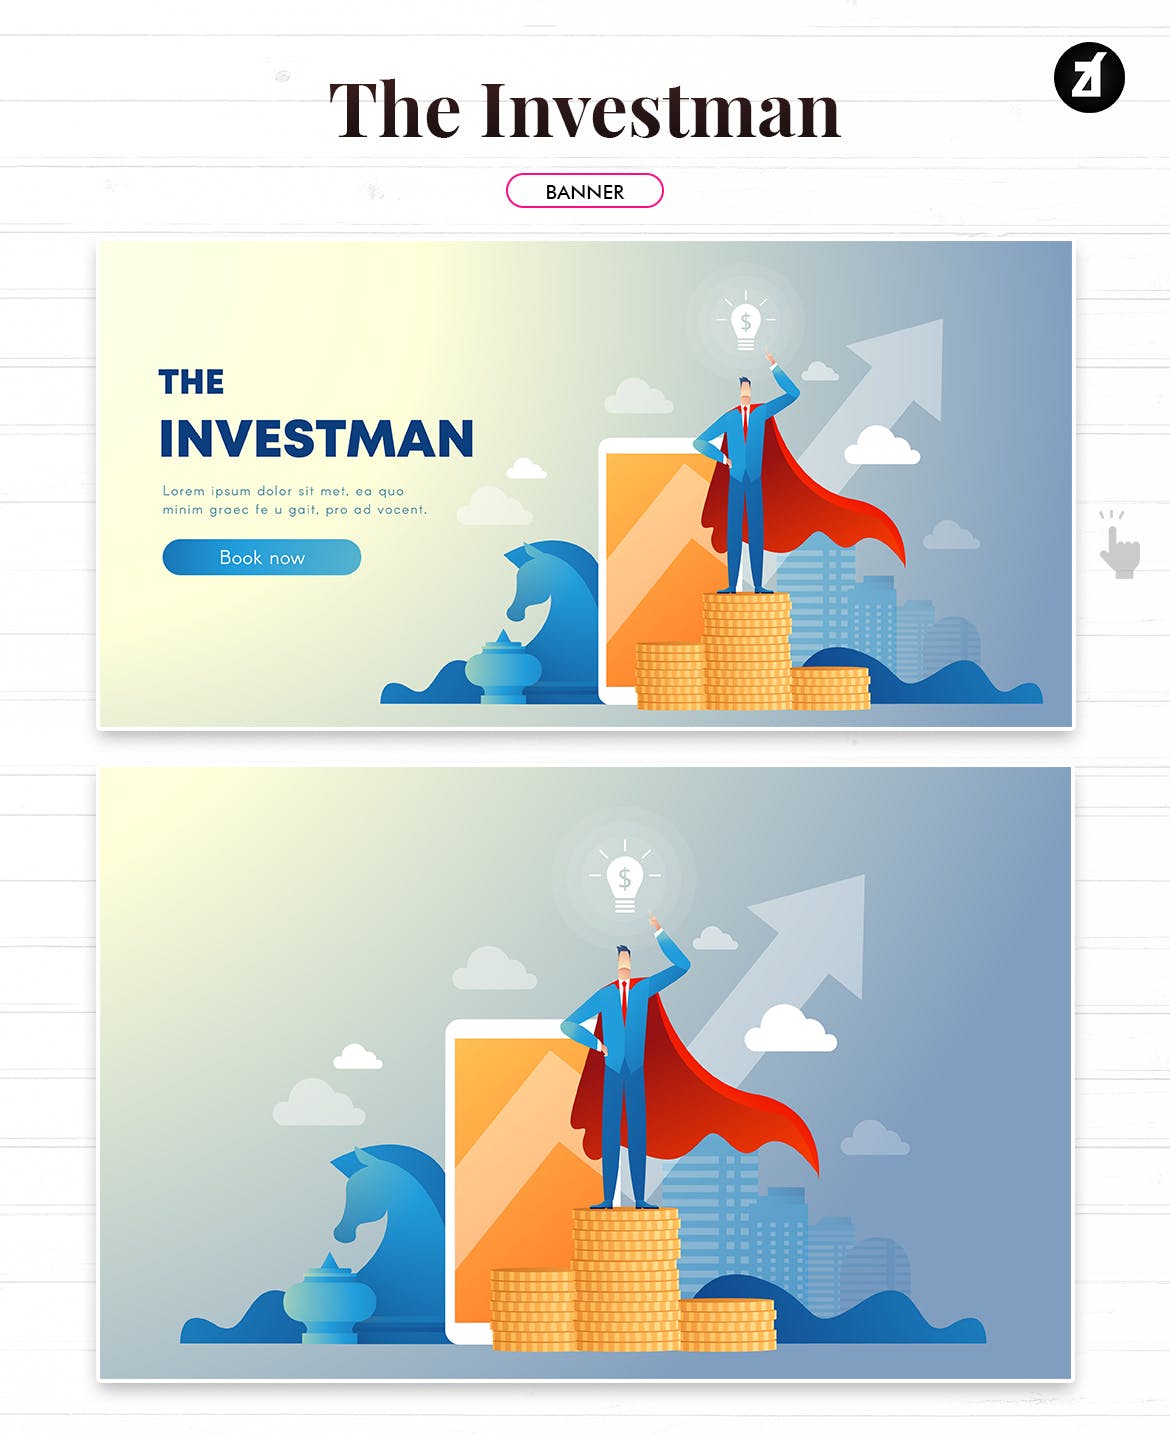 投资者主题矢量16设计网精选概念插画素材 The investman illustration with text layout插图(2)